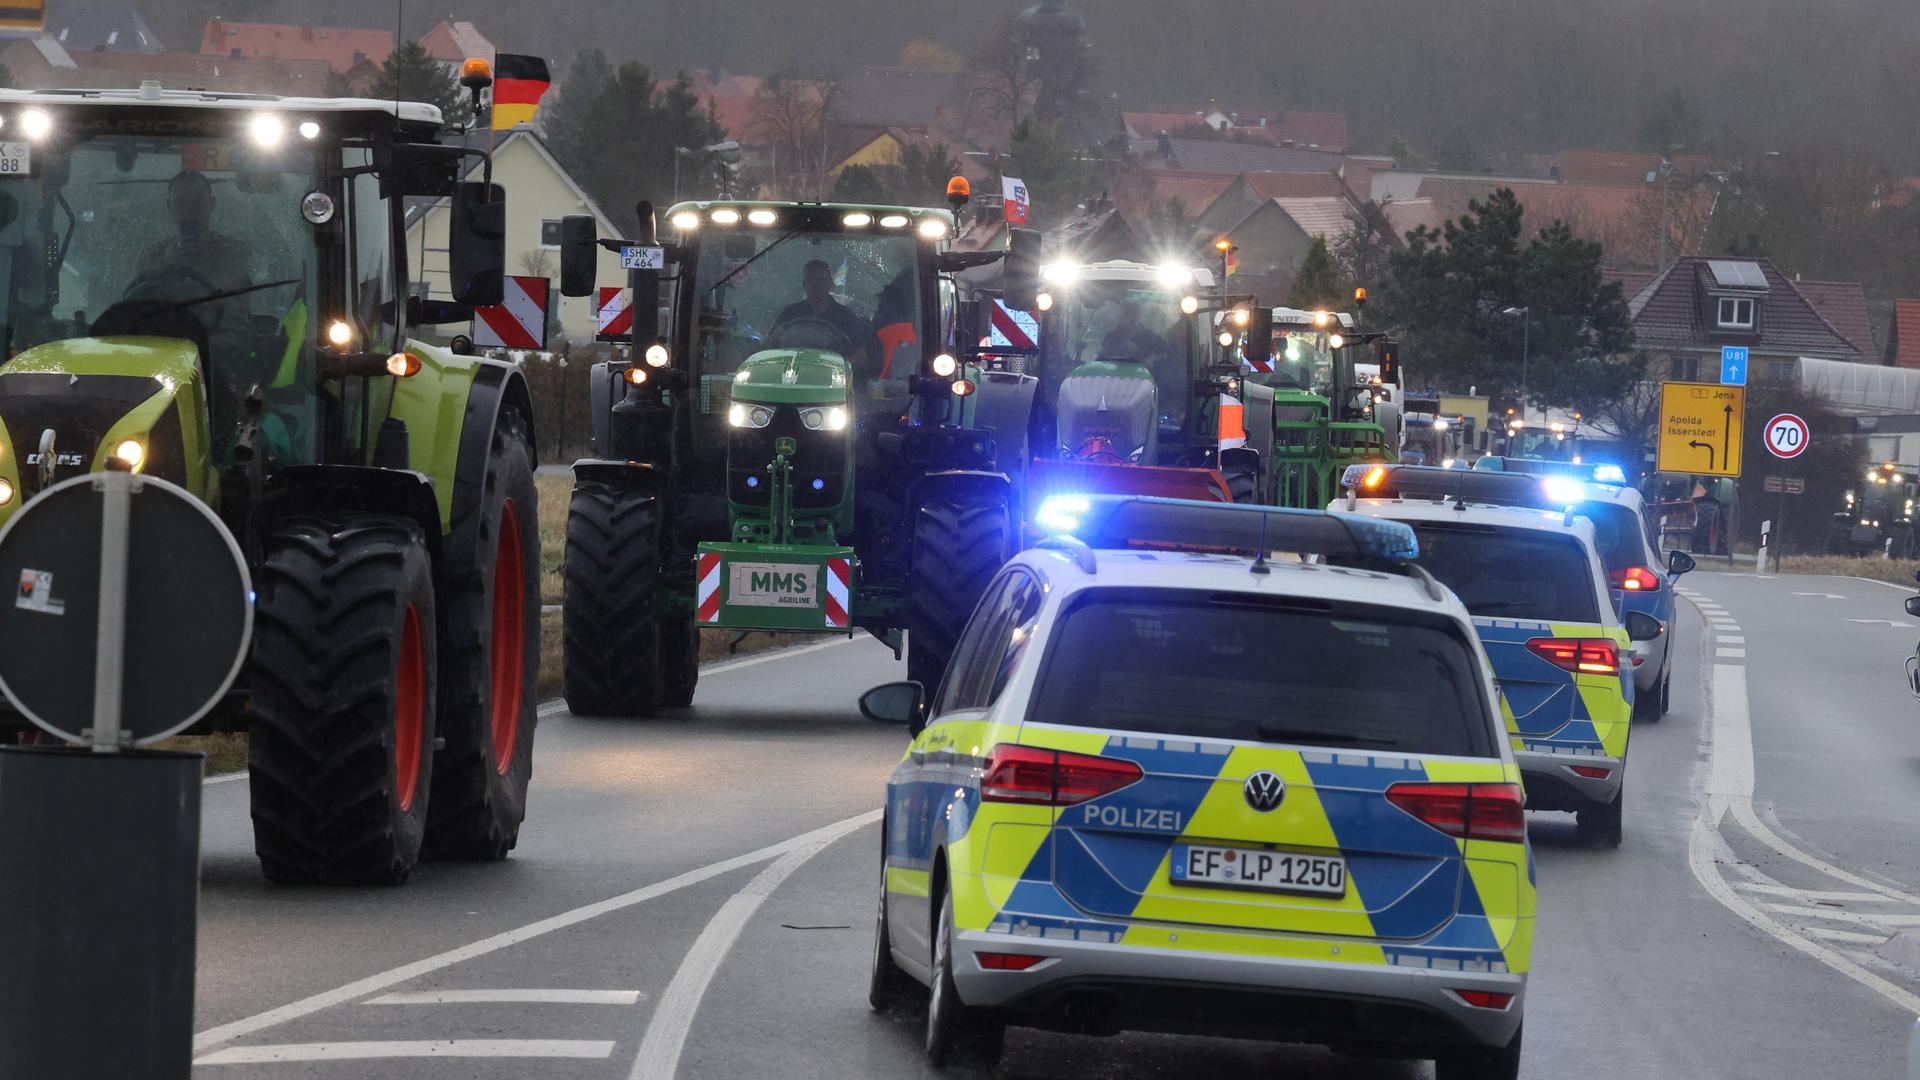 Polizeifahrzeuge begleiten Landwirte, die mit ihren Traktoren über die Bundesstraße 7 fahren. Mit der Aktion wollen die Landwirte gegen die derzeitige Agrarpolitik der Bundesregierung demonstrieren.